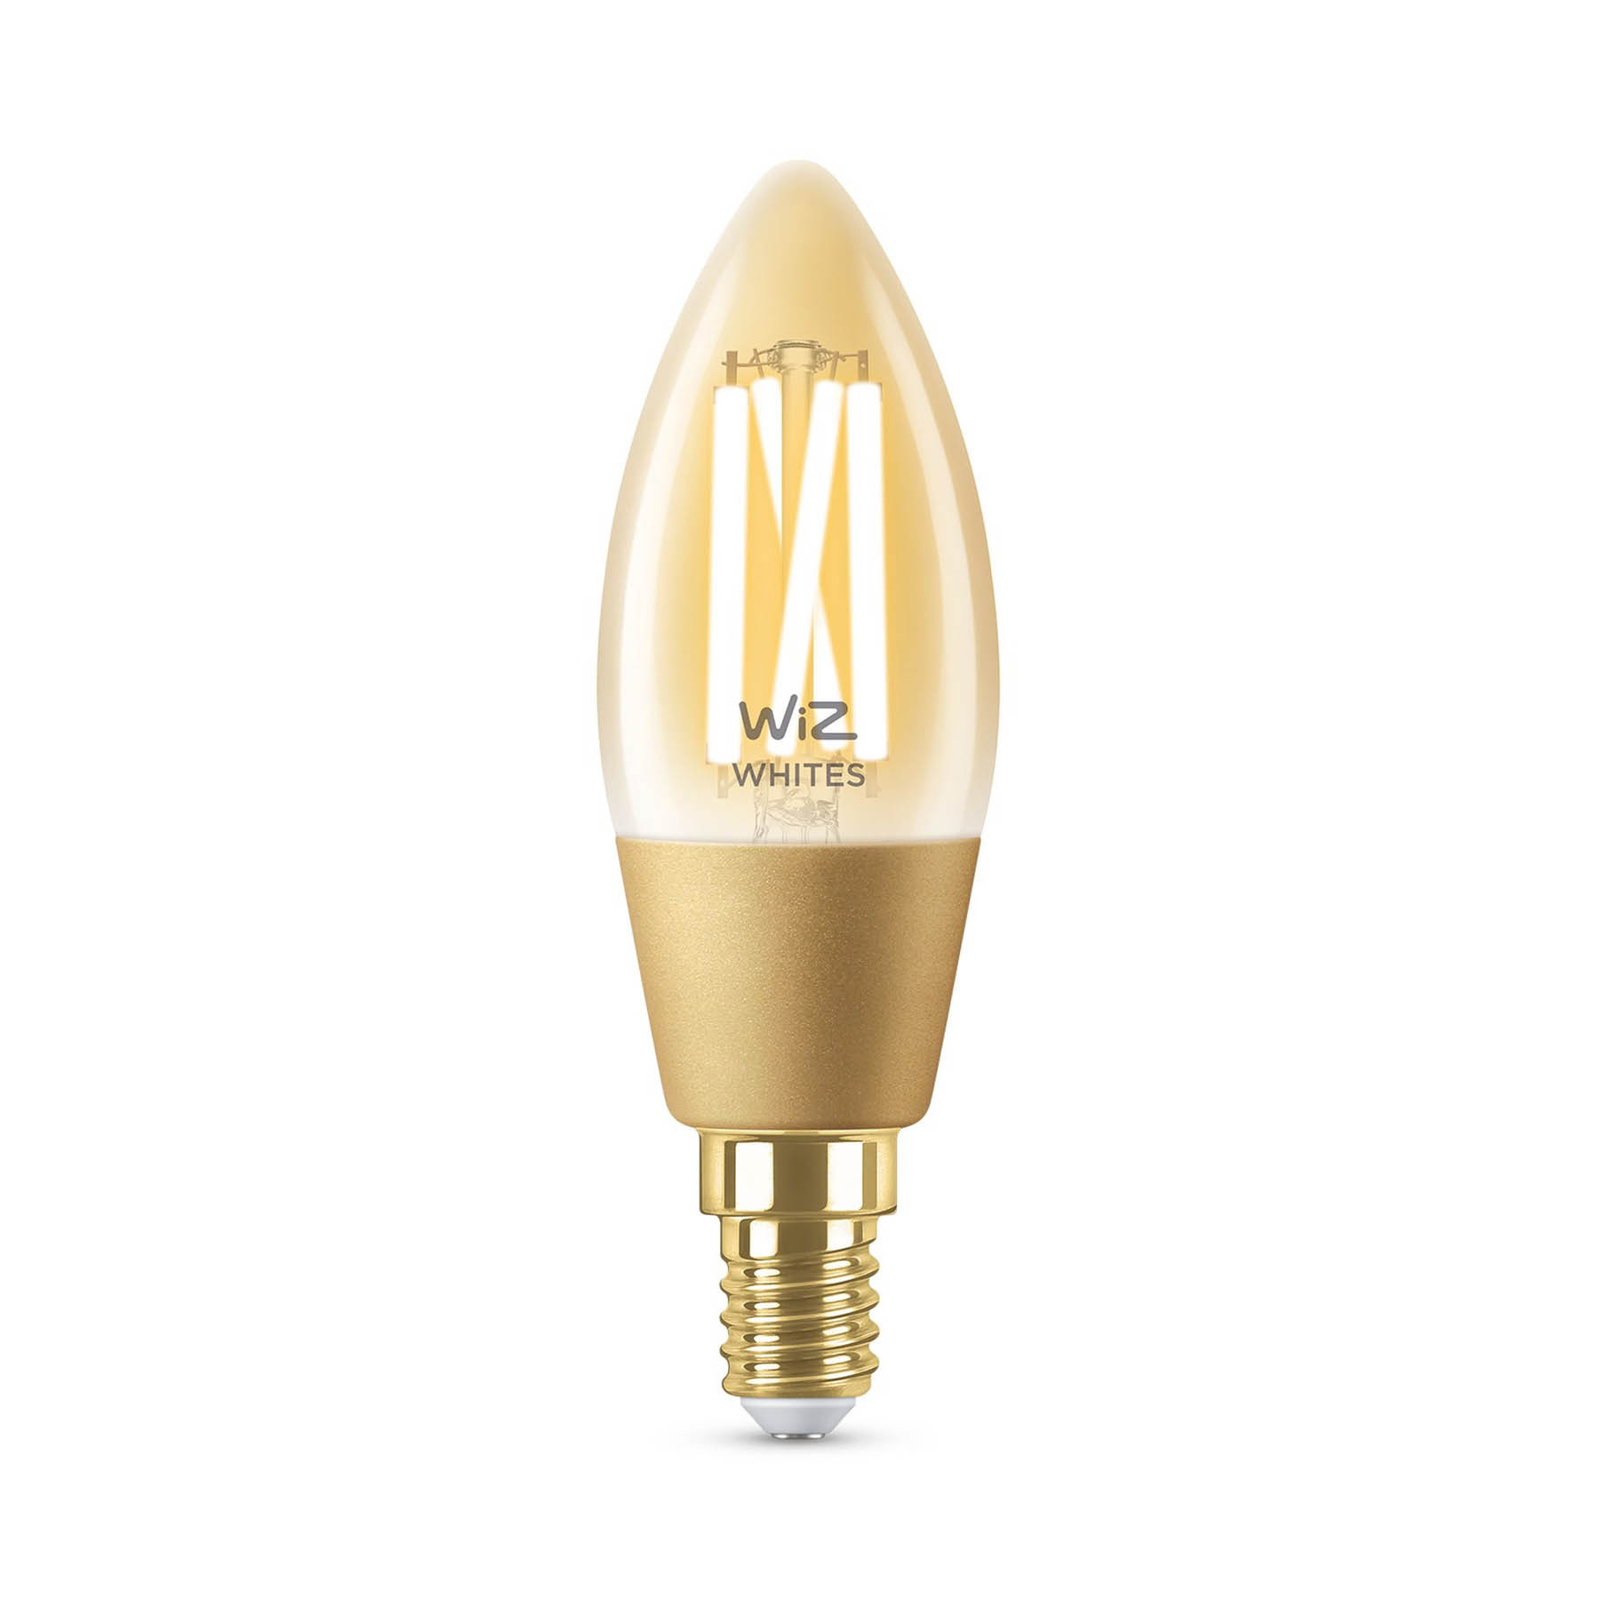 XINRISHENG C35 4W Ampoule LED E14 220V Chaude 2200K Ambre Teinte Bougie Lampe rétro LED Ampoules à Filament dimmable lumière décorative pour la Maison,5 